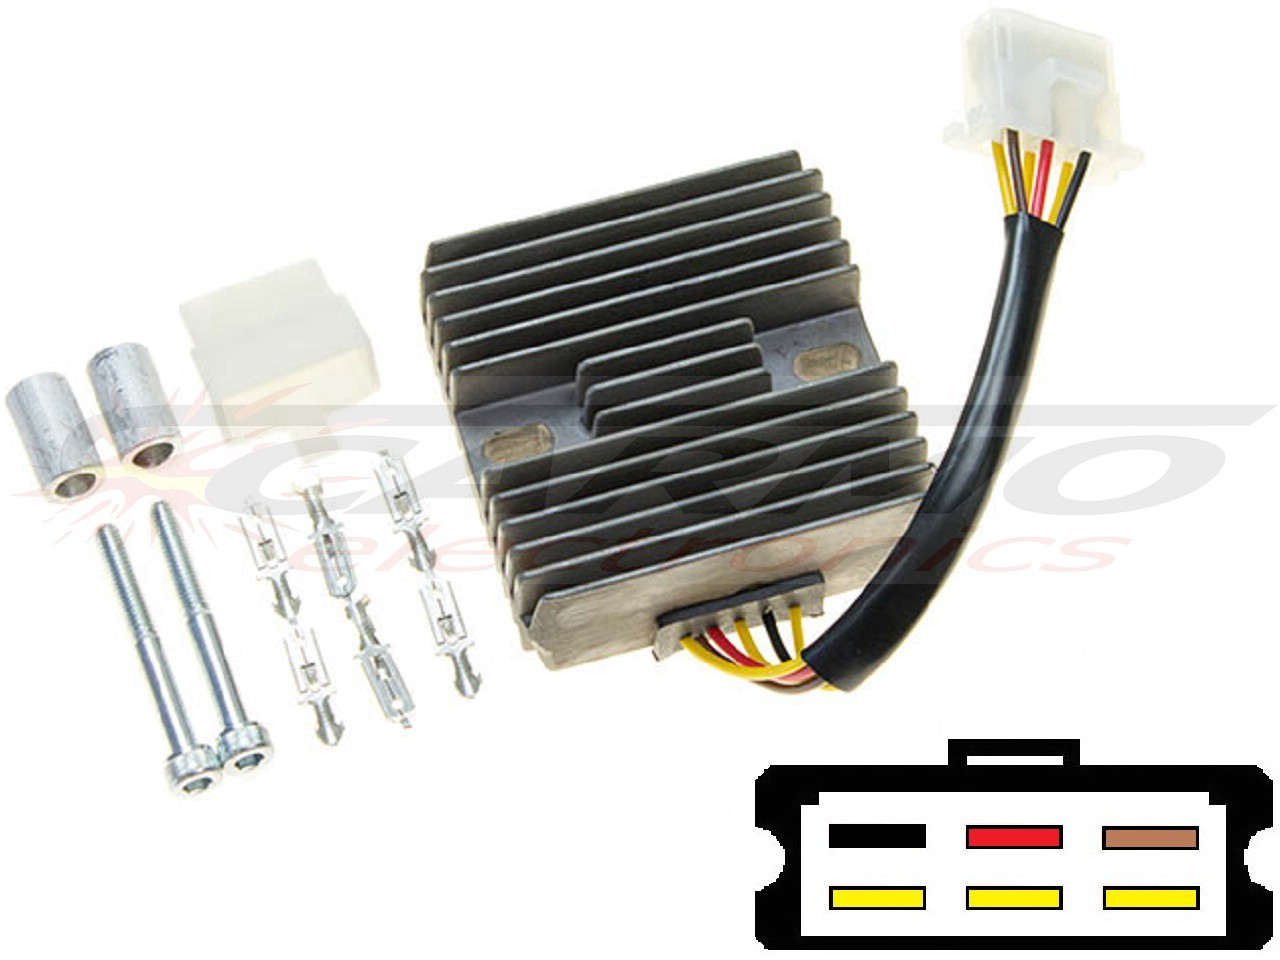 CARR151 - Kawasaki EN500 GPZ500 MOSFET Spanningsregelaar gelijkrichter SH530-12 - Clique na Imagem para Fechar